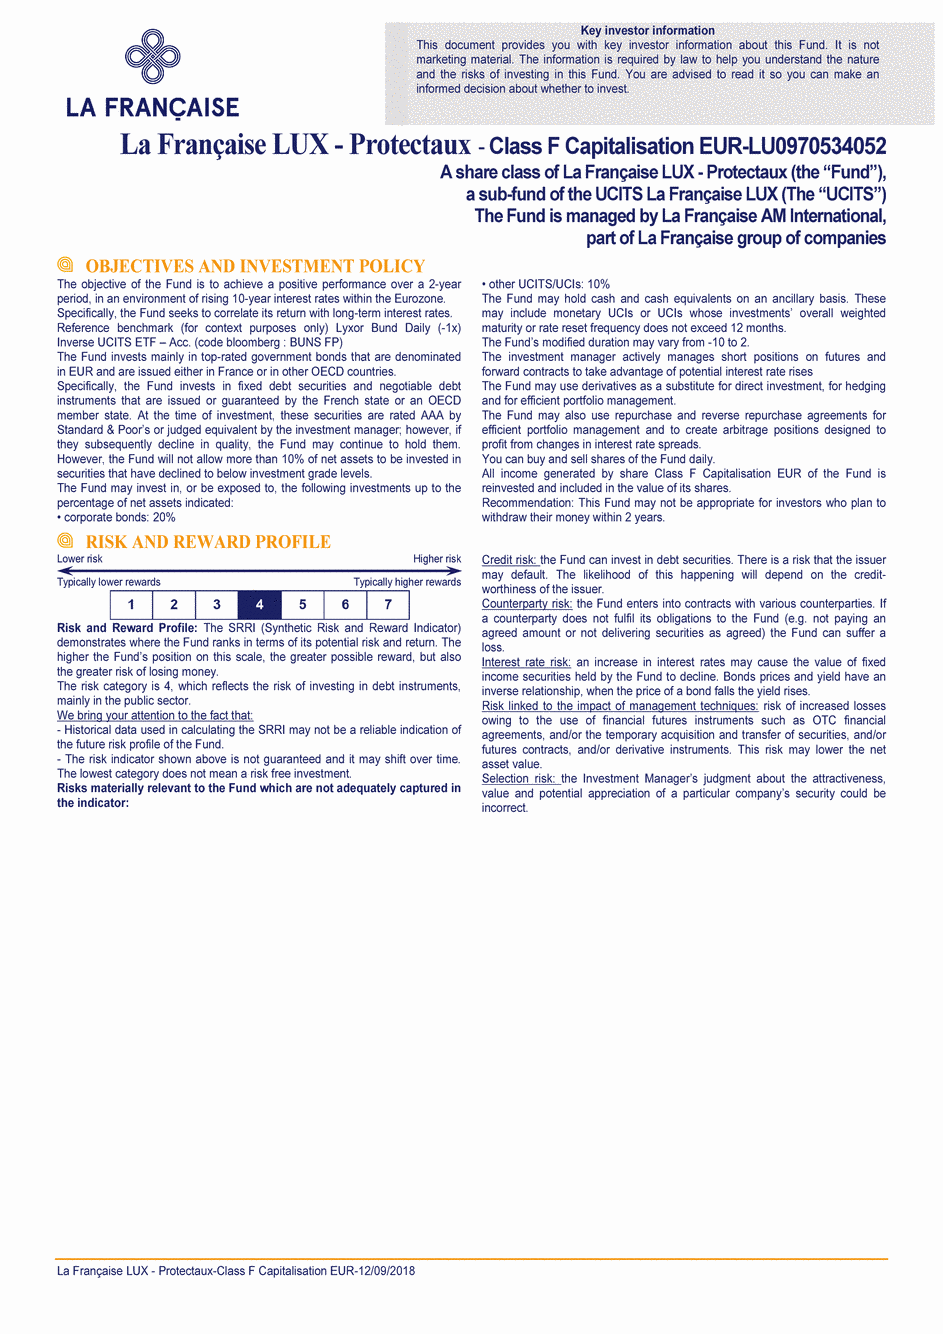 DICI La Française LUX - Protectaux - F (C) EUR - 12/09/2018 - Anglais